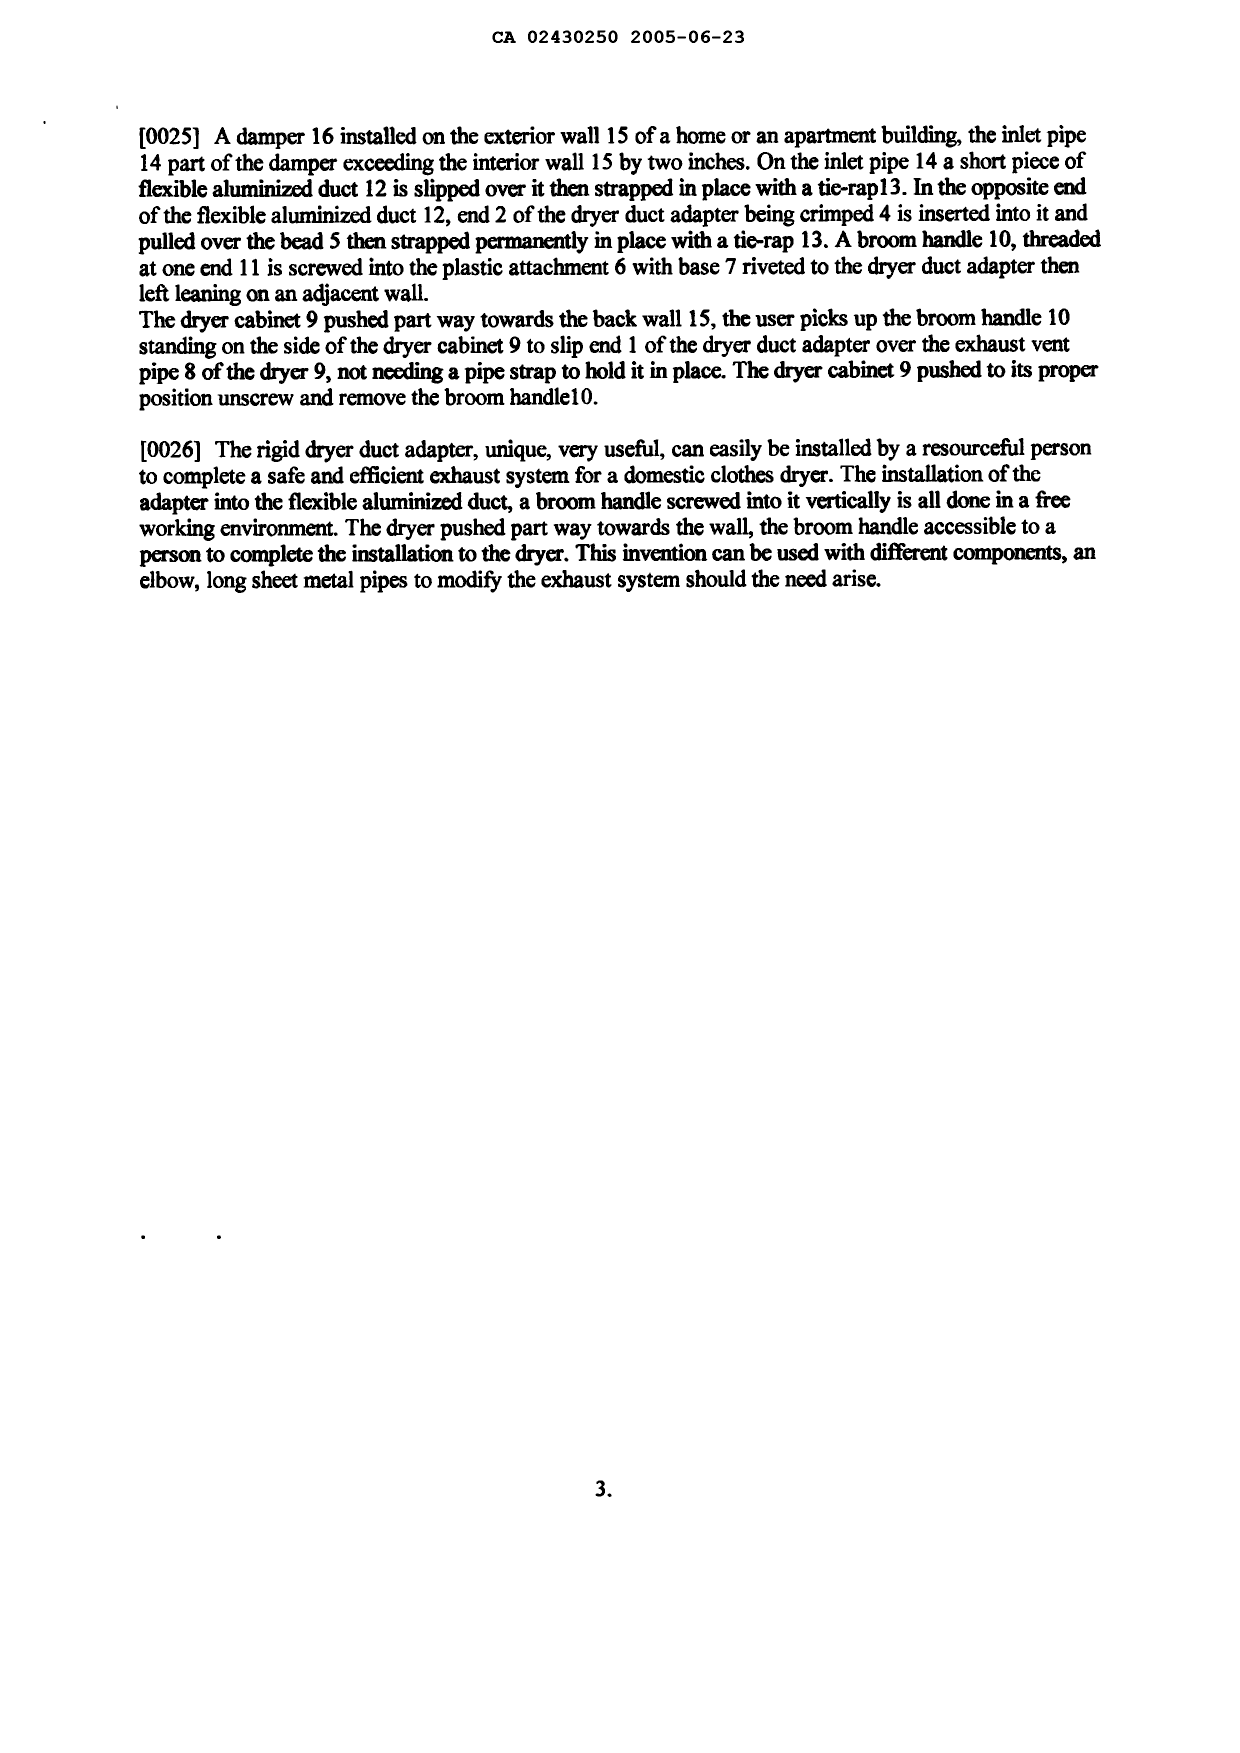 Canadian Patent Document 2430250. Description 20050623. Image 3 of 3